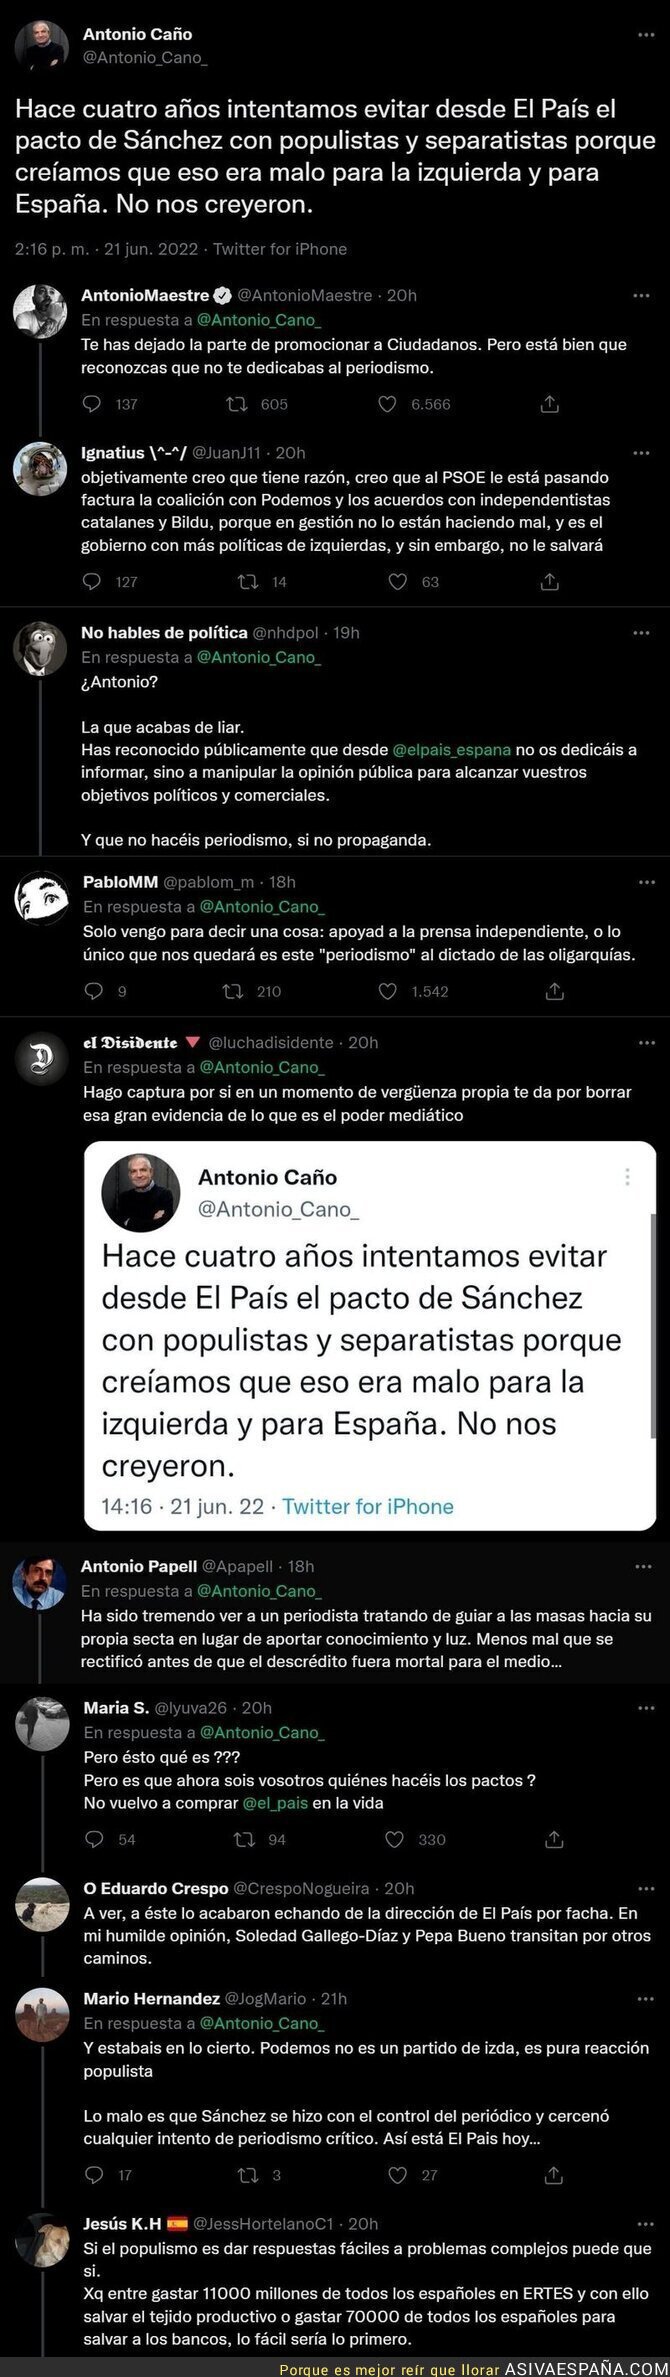 Antonio Cano, exdirector de 'El País' la lía por completo al confesar lo que hacían desde su diario para intentar dirigir España a su antojo